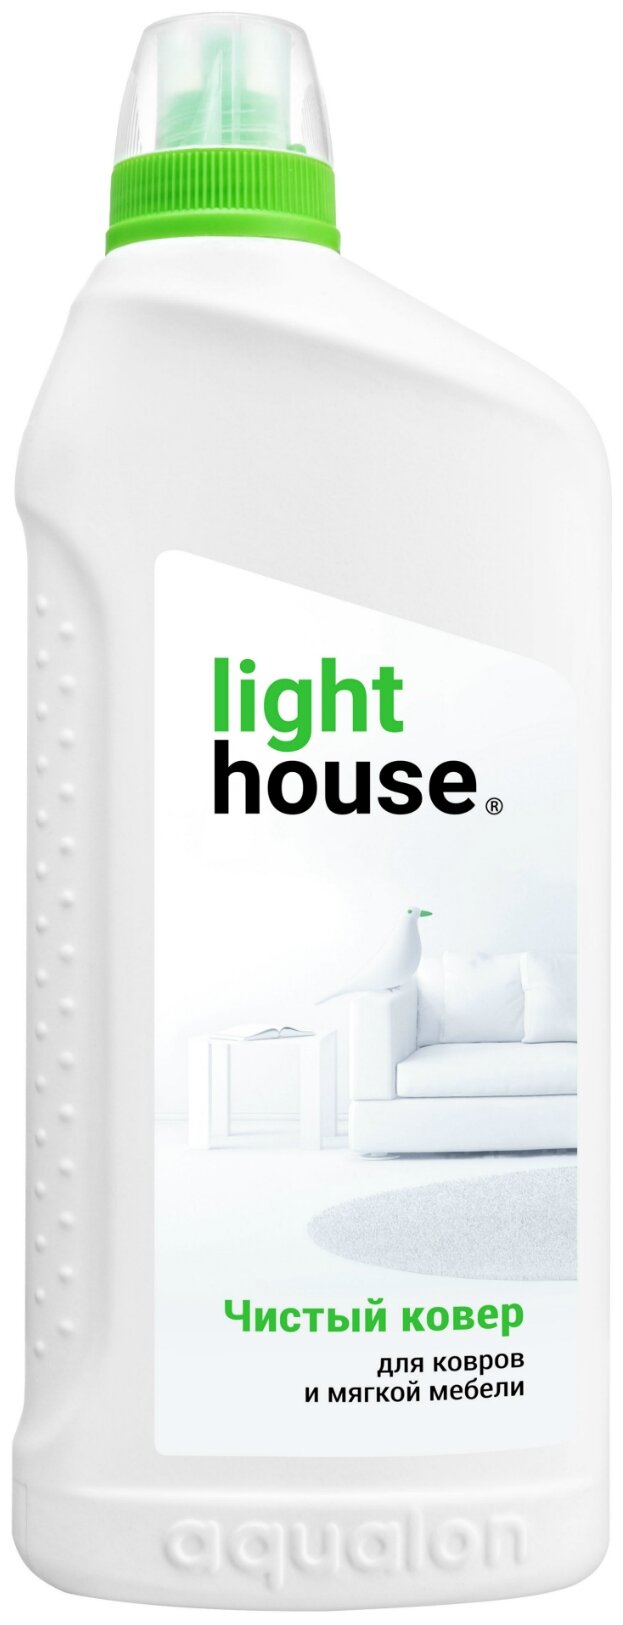 Средство для ковров LightHouse Чистый ковер, 750мл